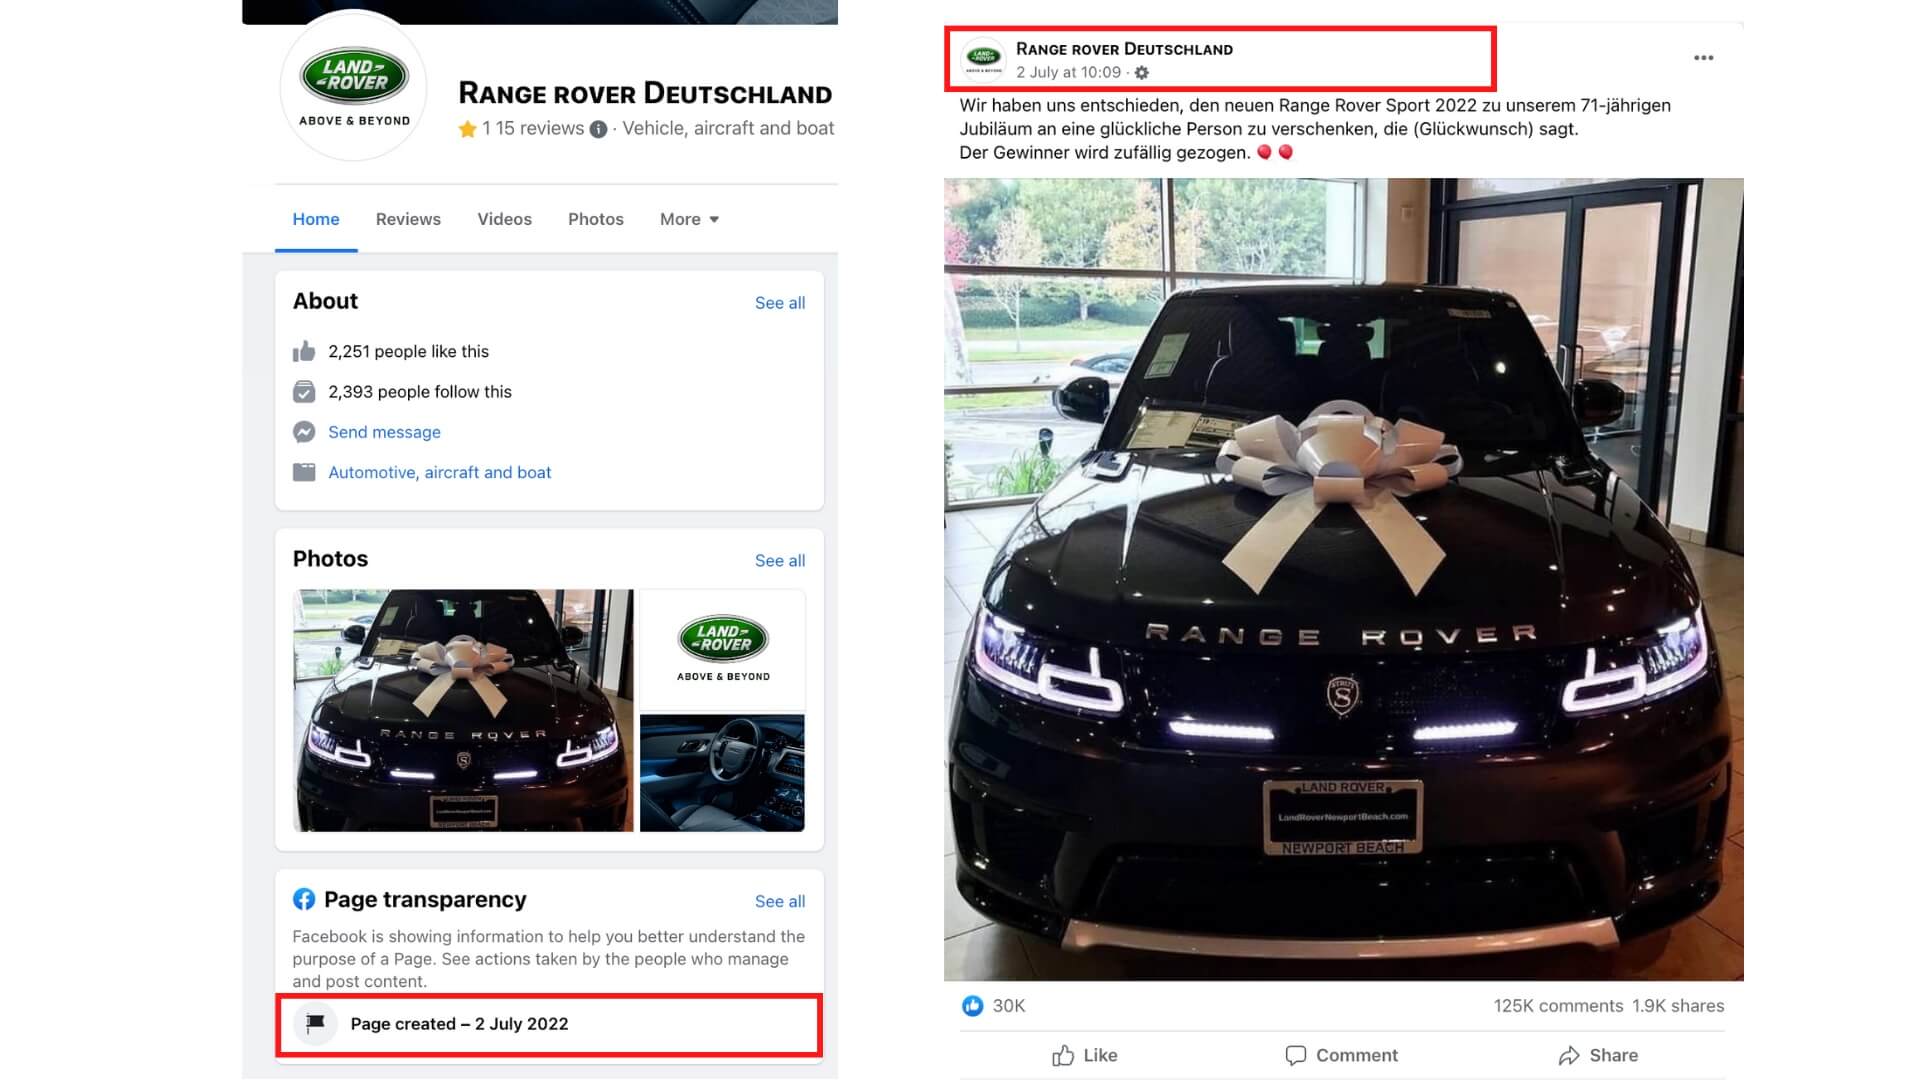 Die gefälschten Profile gibt es erst seit kurzem, sie veröffentlichten direkt nach ihrer Erstellung das angebliche Gewinnspiel. Anders als das offizielle Facebook-Profil Jaguar Land Rover haben sie zudem keinen blauen Haken.